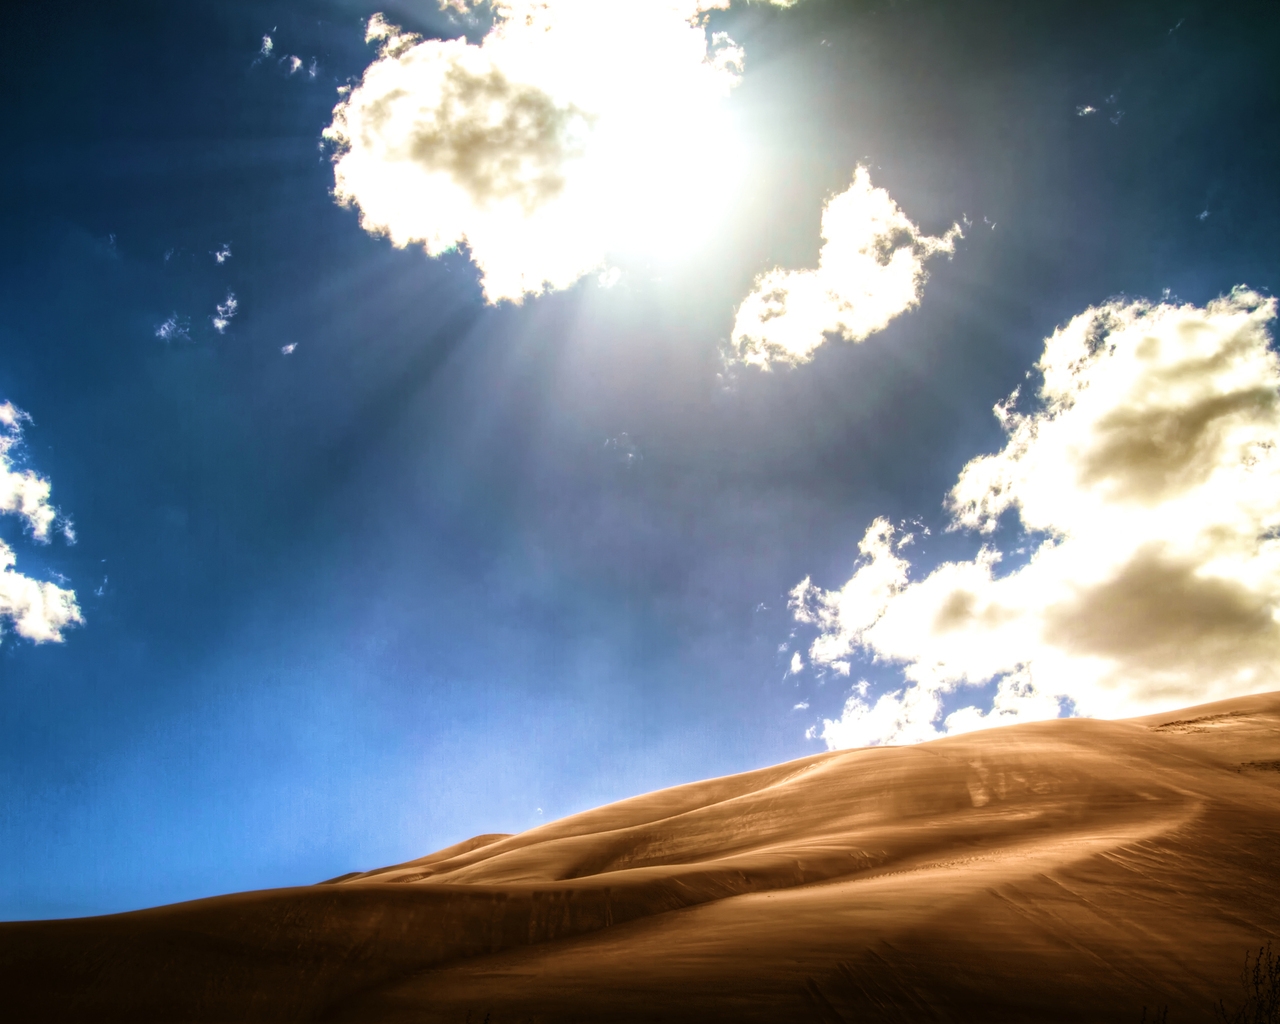 Bright Desert for 1280 x 1024 resolution